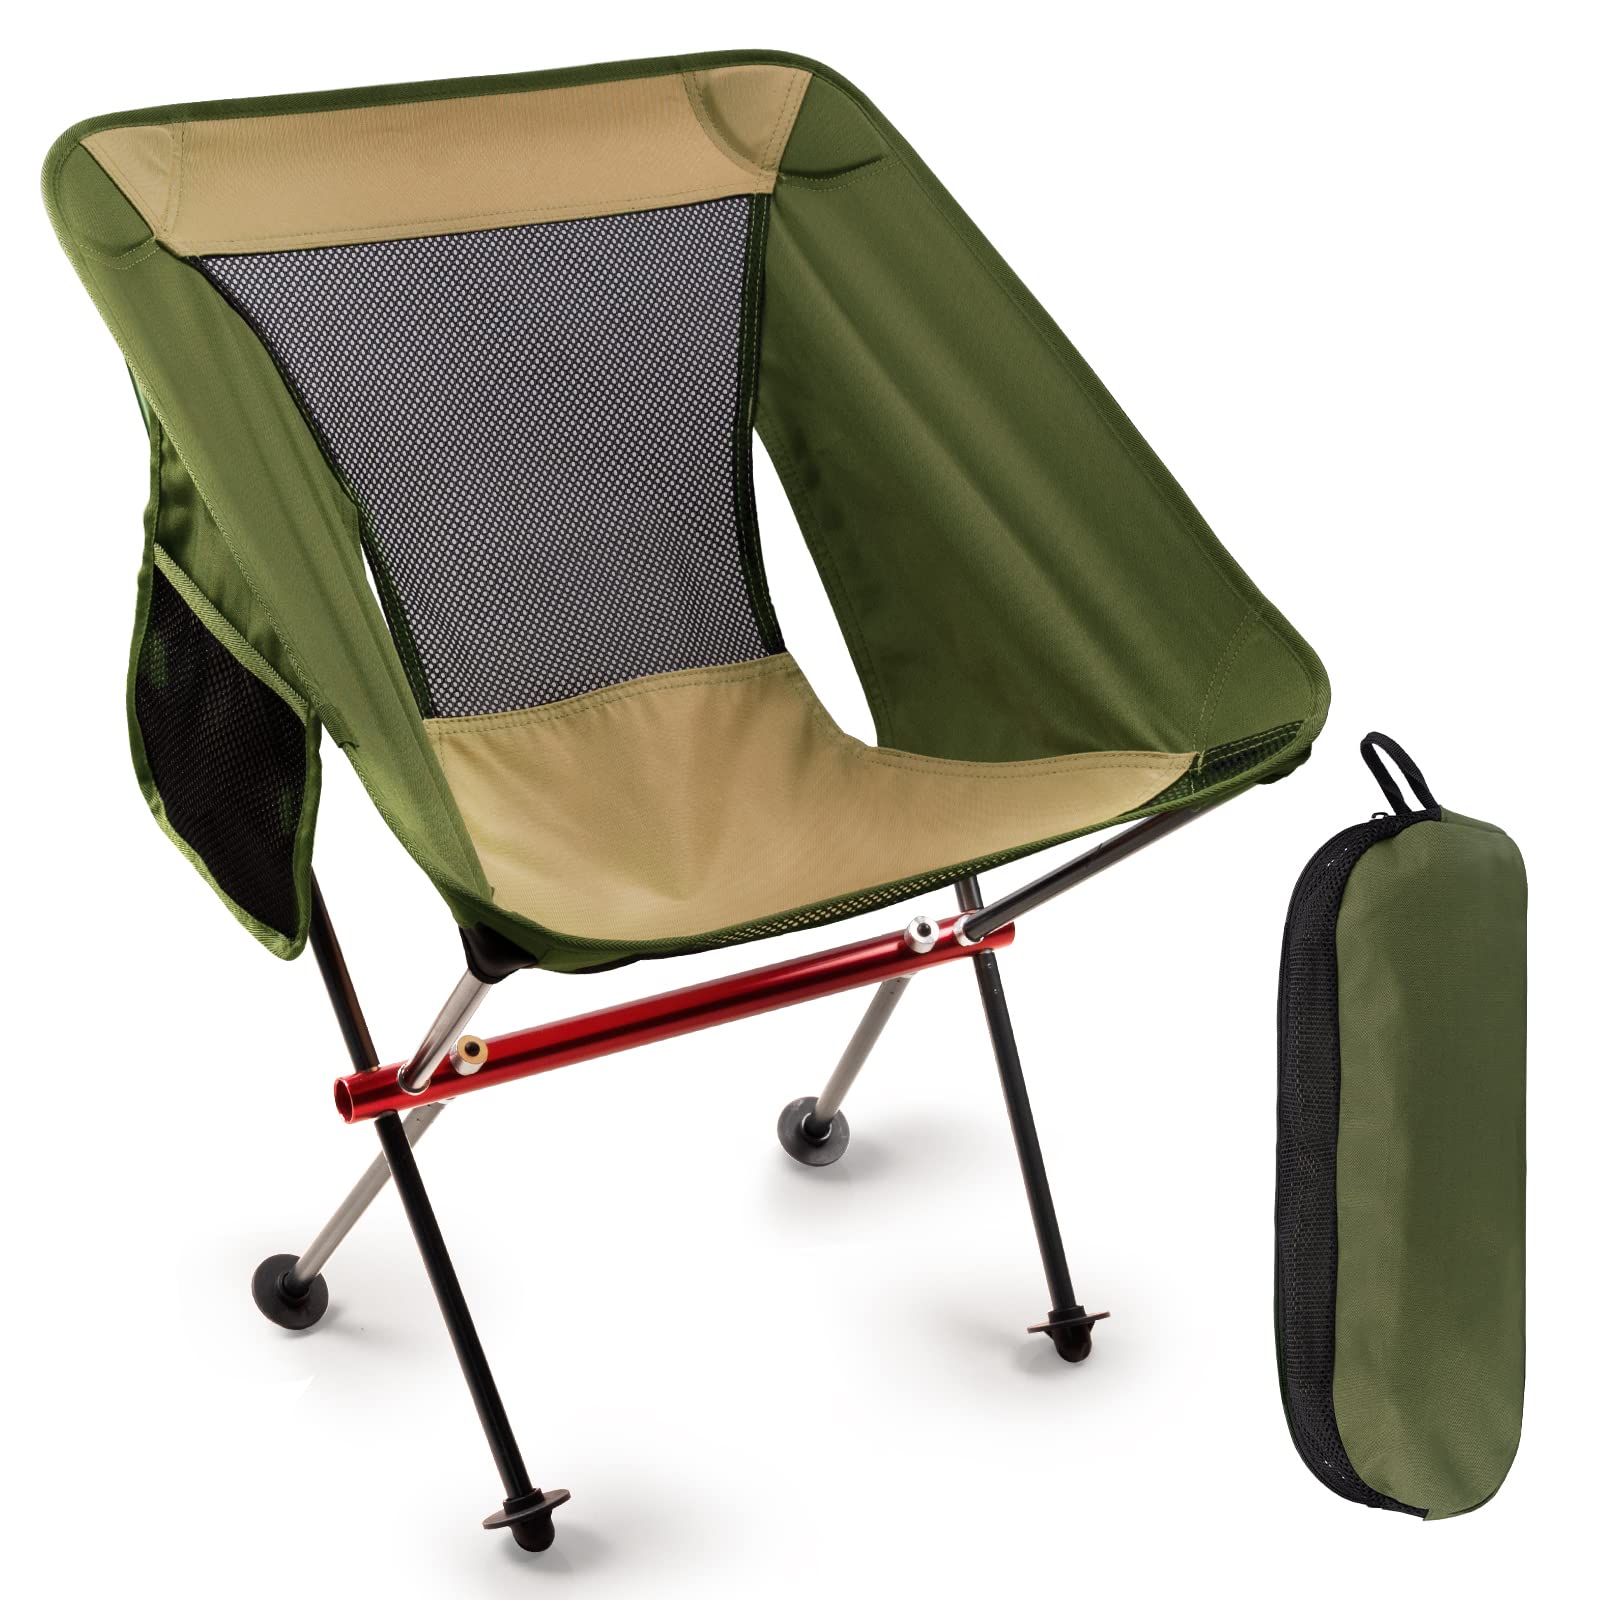 送料無料VOOVY Portable Folding Chair Ultralight Compact Camping Chair with Side Pocket Carrying Bag for Outdoor Campi